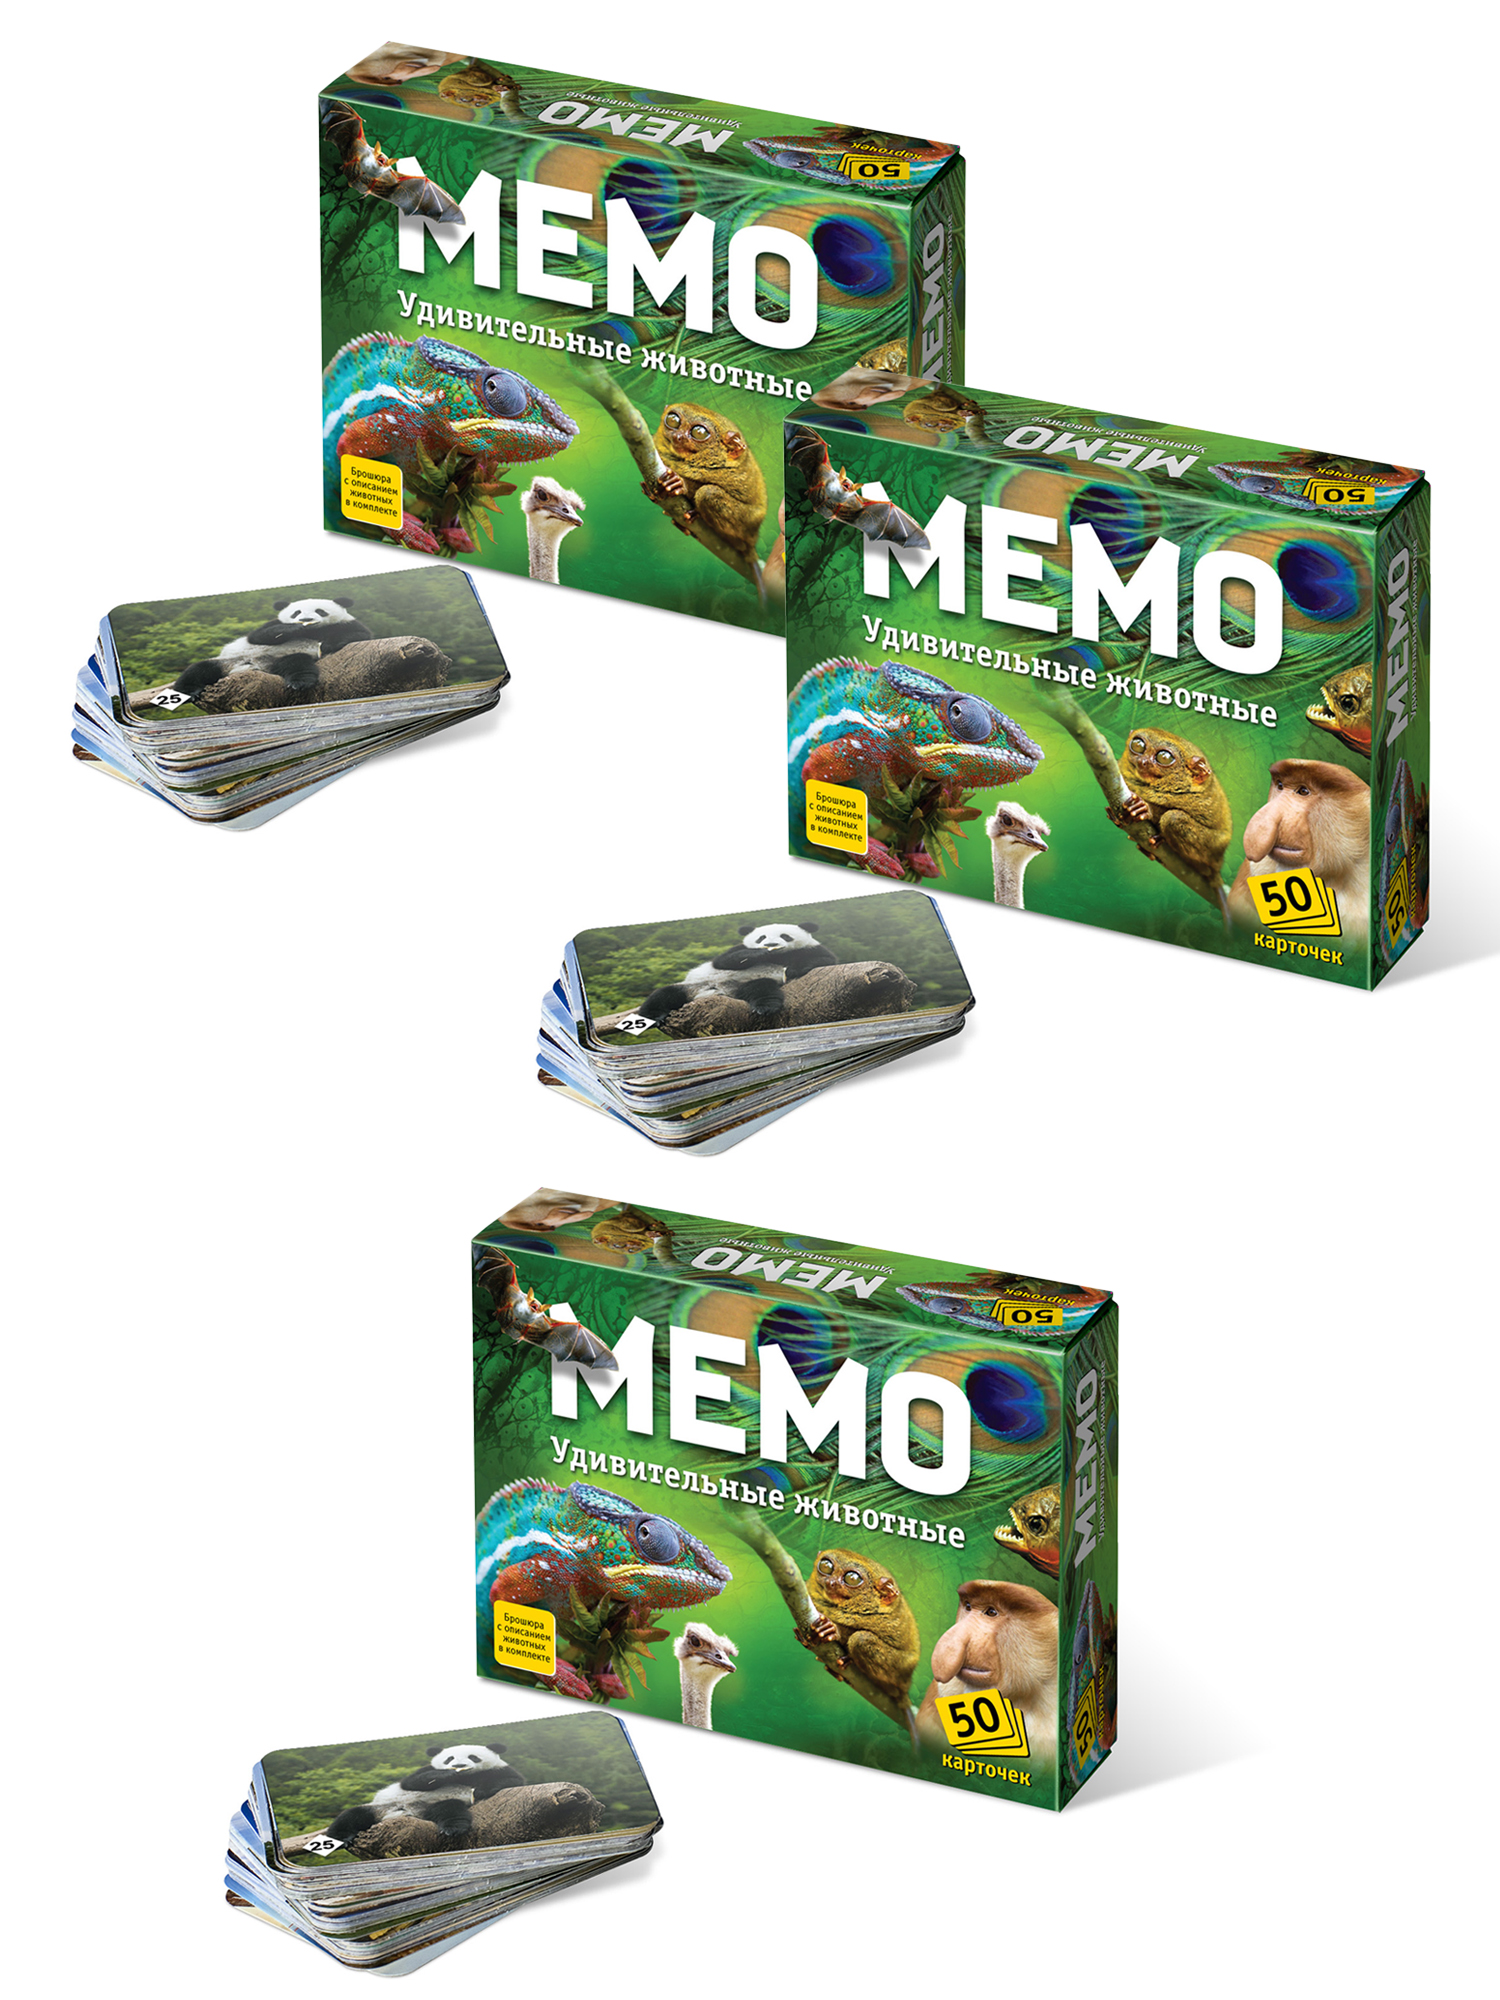 Настольные развивающие игры Нескучные игры Мемо для детей Удивительные животные - 3 набора настольная игра фото мемо удивительные животные 34 карточки